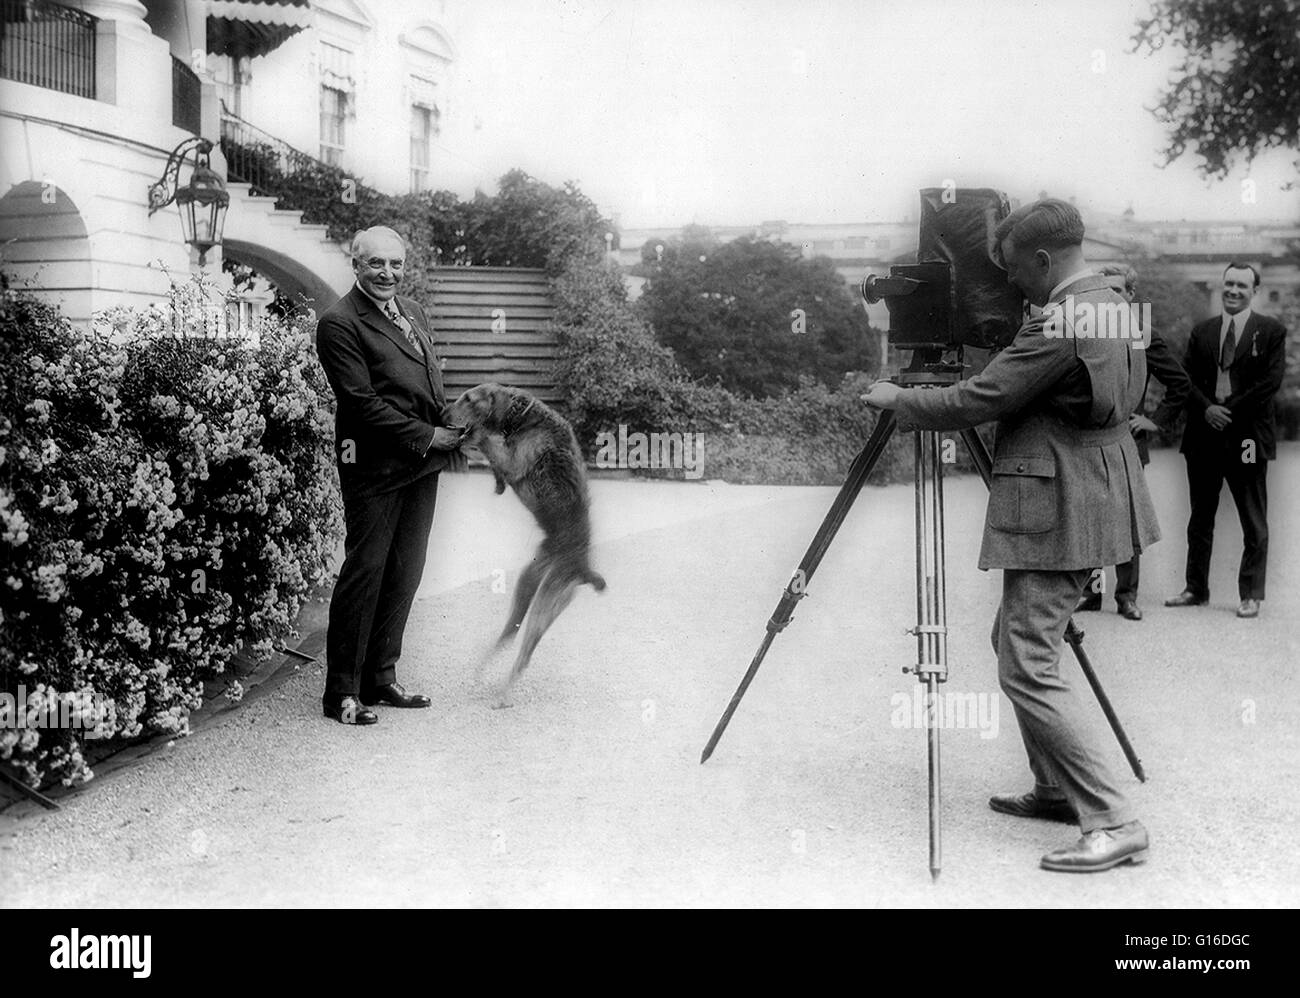 Präsident Harding mit Hund Laddie Boy, fotografiert vor dem weißen Haus. Warren Gamaliel Harding (2. November 1865 - 2. August 1923) war der 29. Präsident der Vereinigten Staaten (1921-23), ein Republikaner aus Ohio, der in den Ohio Sen serviert Stockfoto